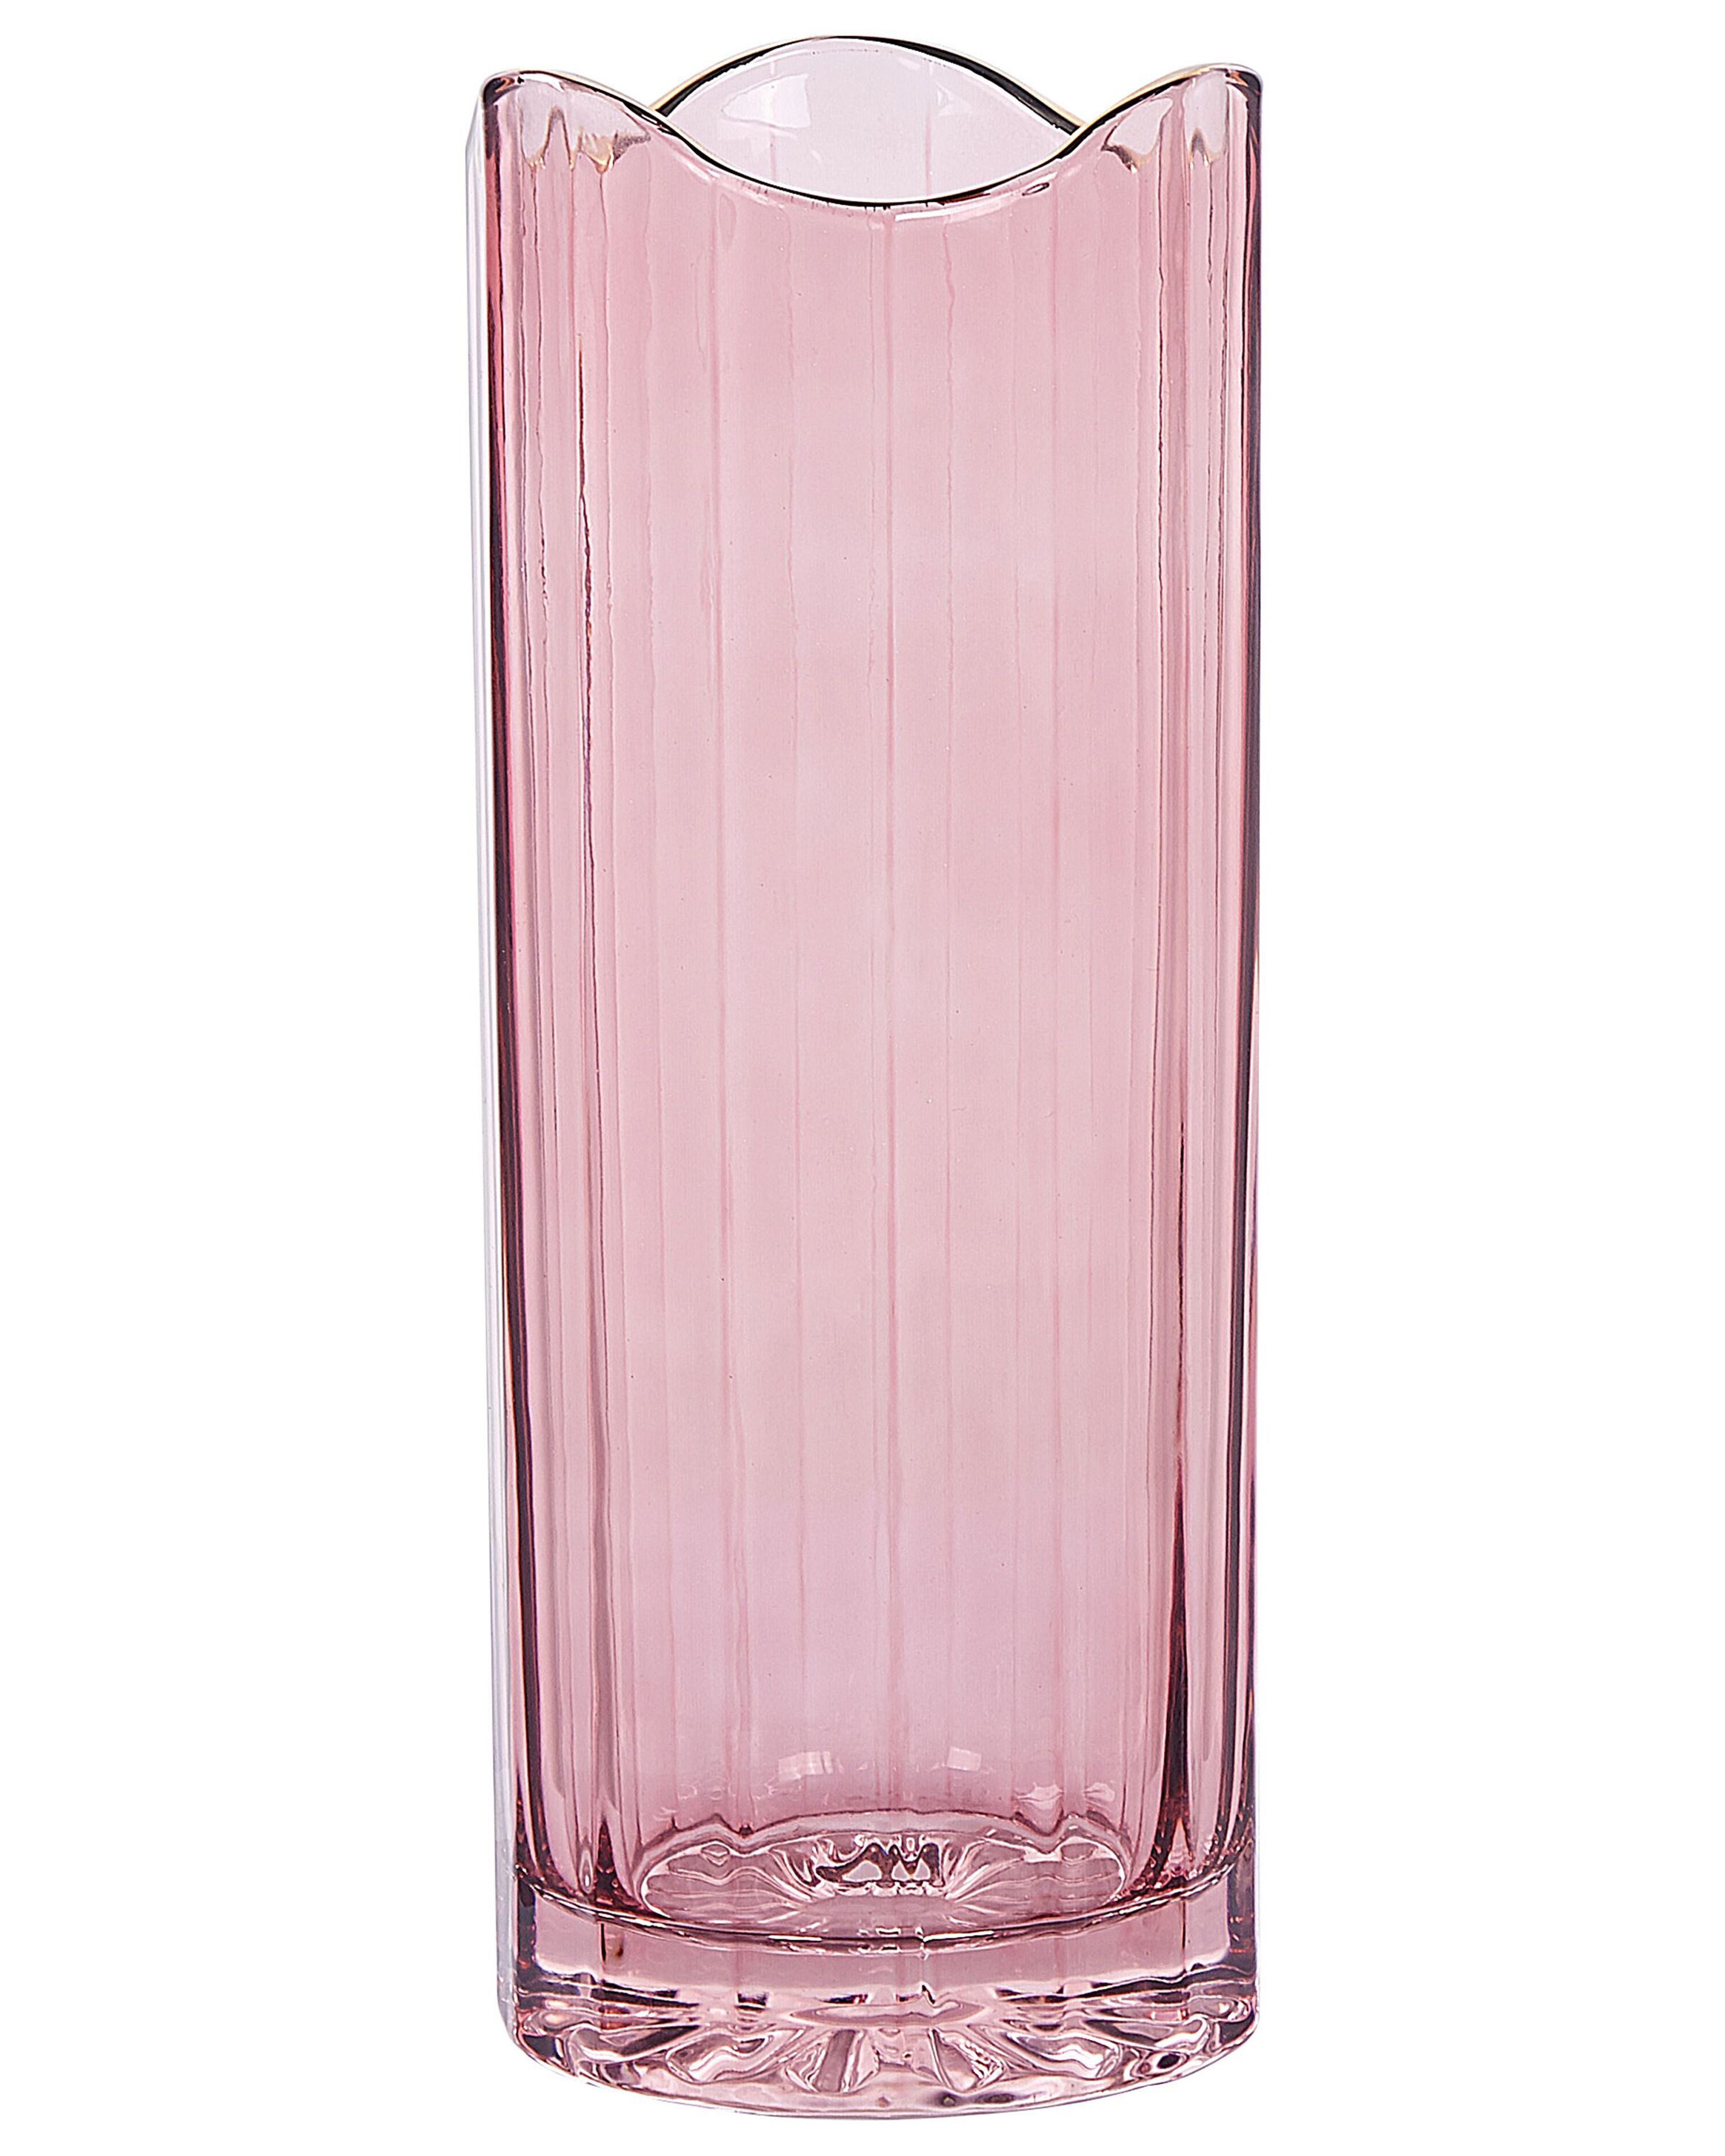 Ontoegankelijk Arresteren smog Bloemenvaas roze glas 30 cm PERDIKI | ✓ Gratis Levering